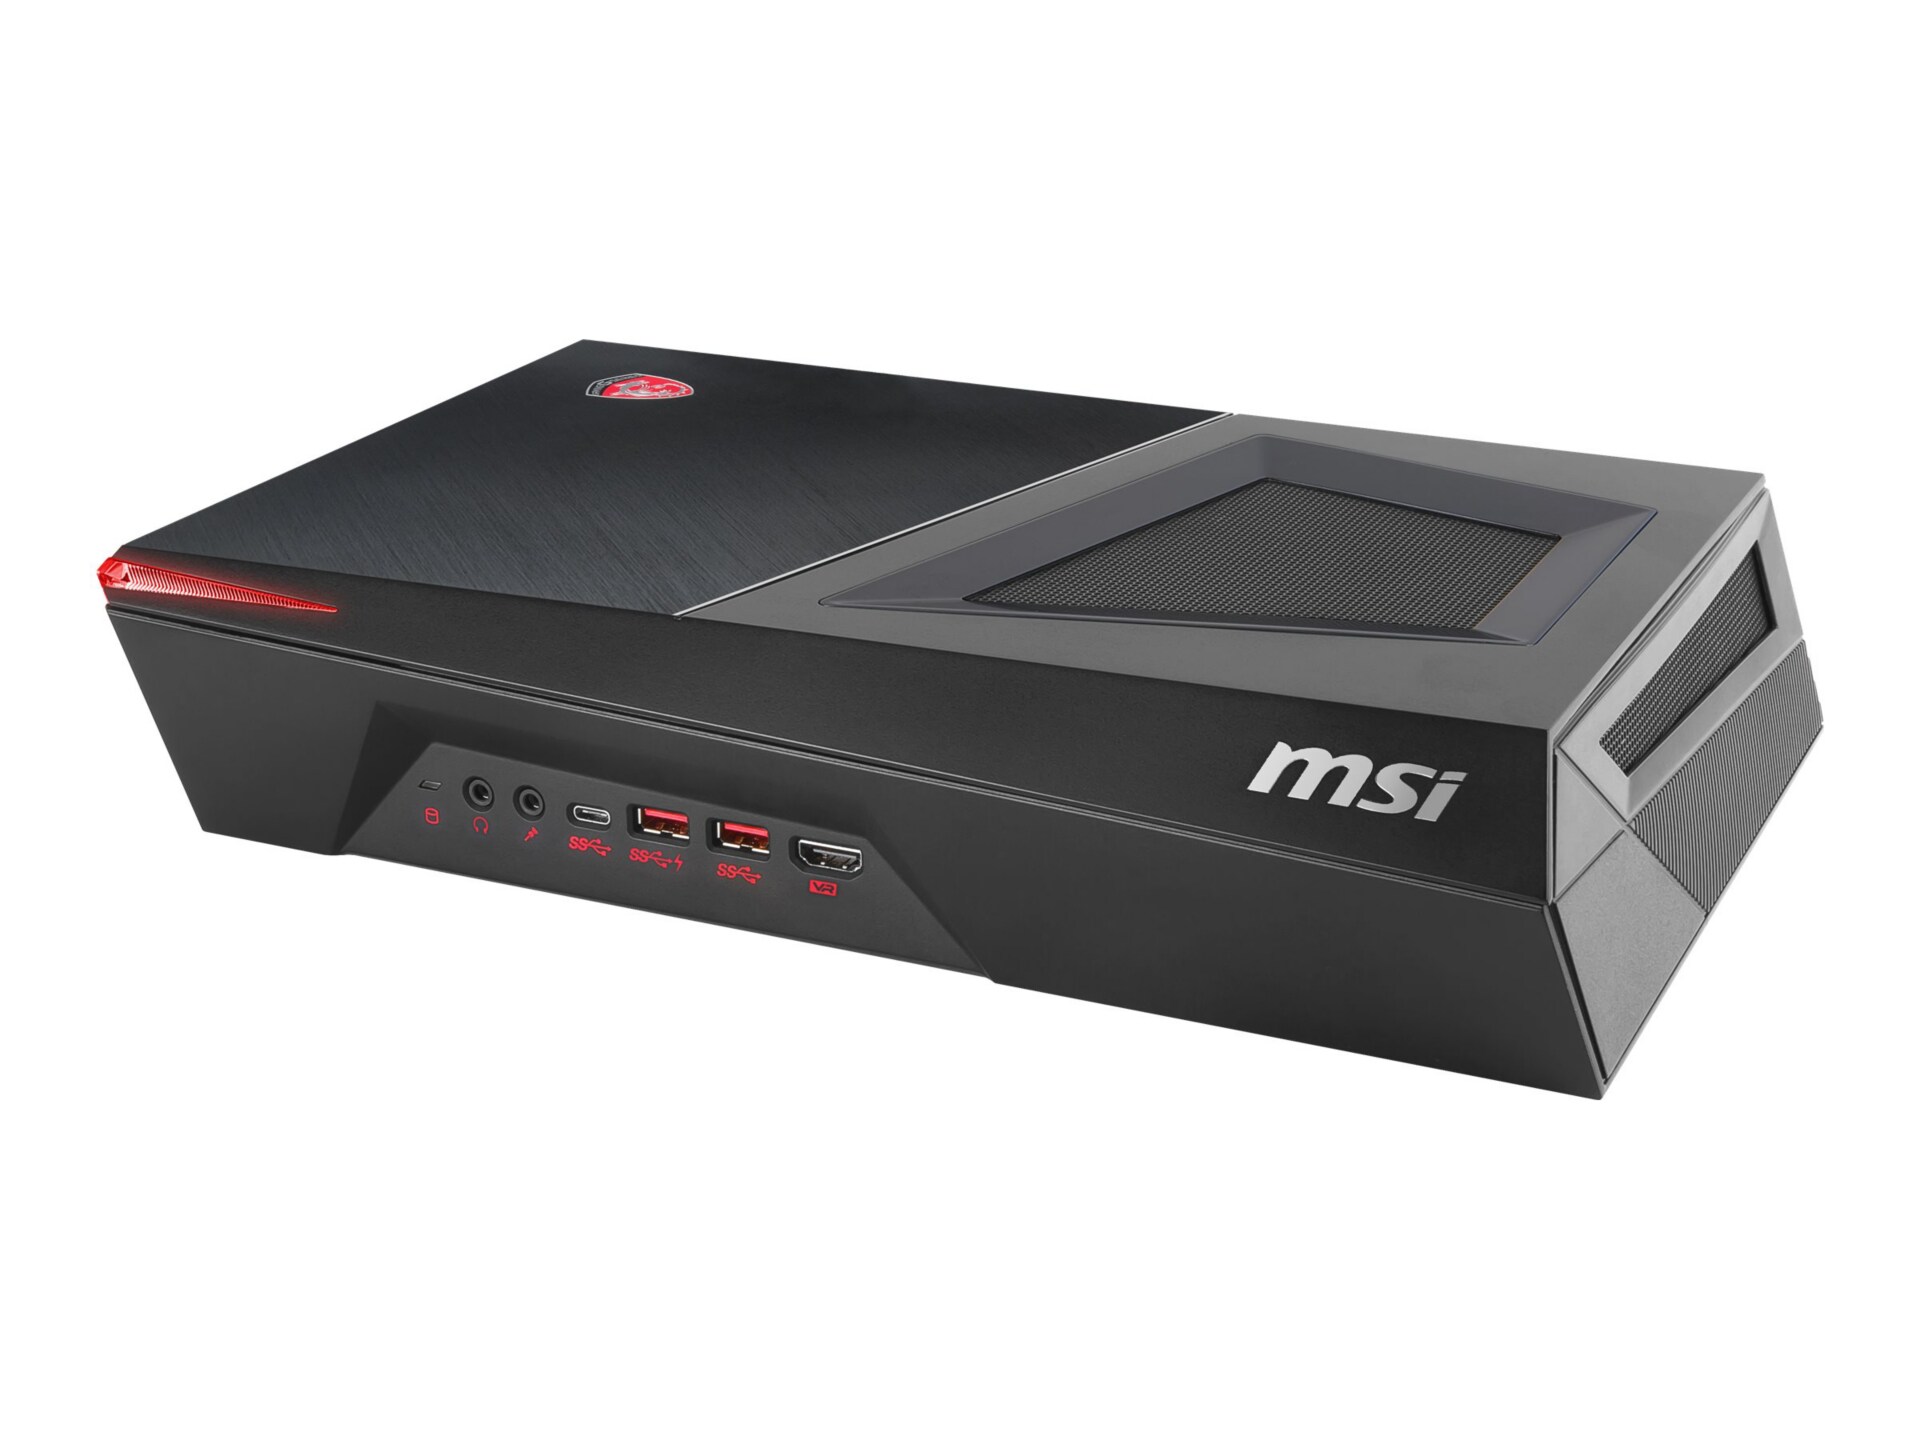 MSI Trident 3 9SH 444US - DTS - Core i5 9400F 2.9 GHz - 8 GB - 512 GB